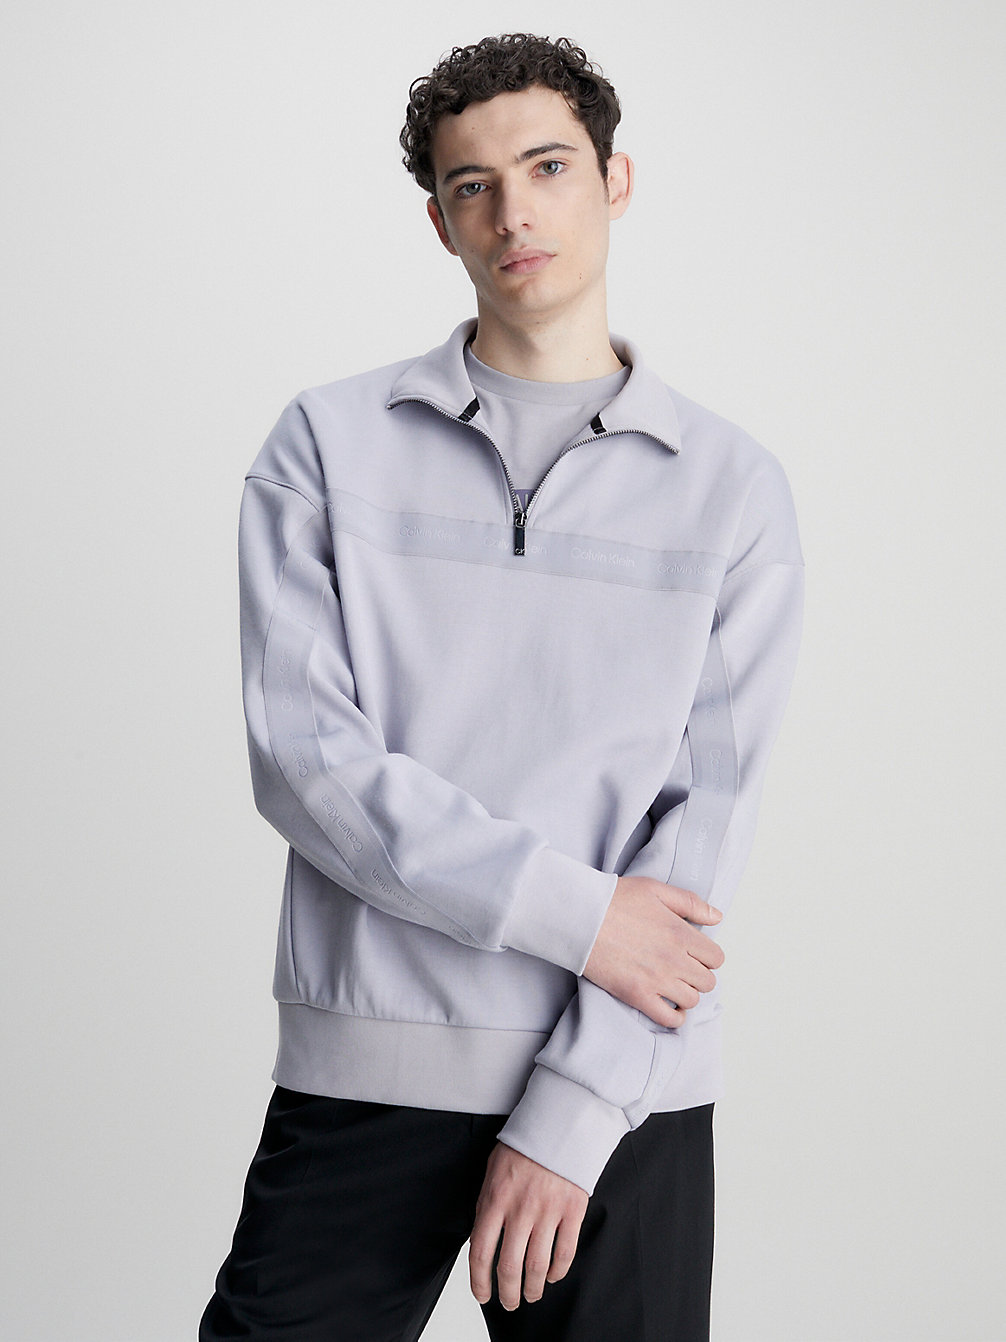 DAPPLE GRAY Sweatshirt Mit Reißverschluss Am Kragen undefined Herren Calvin Klein